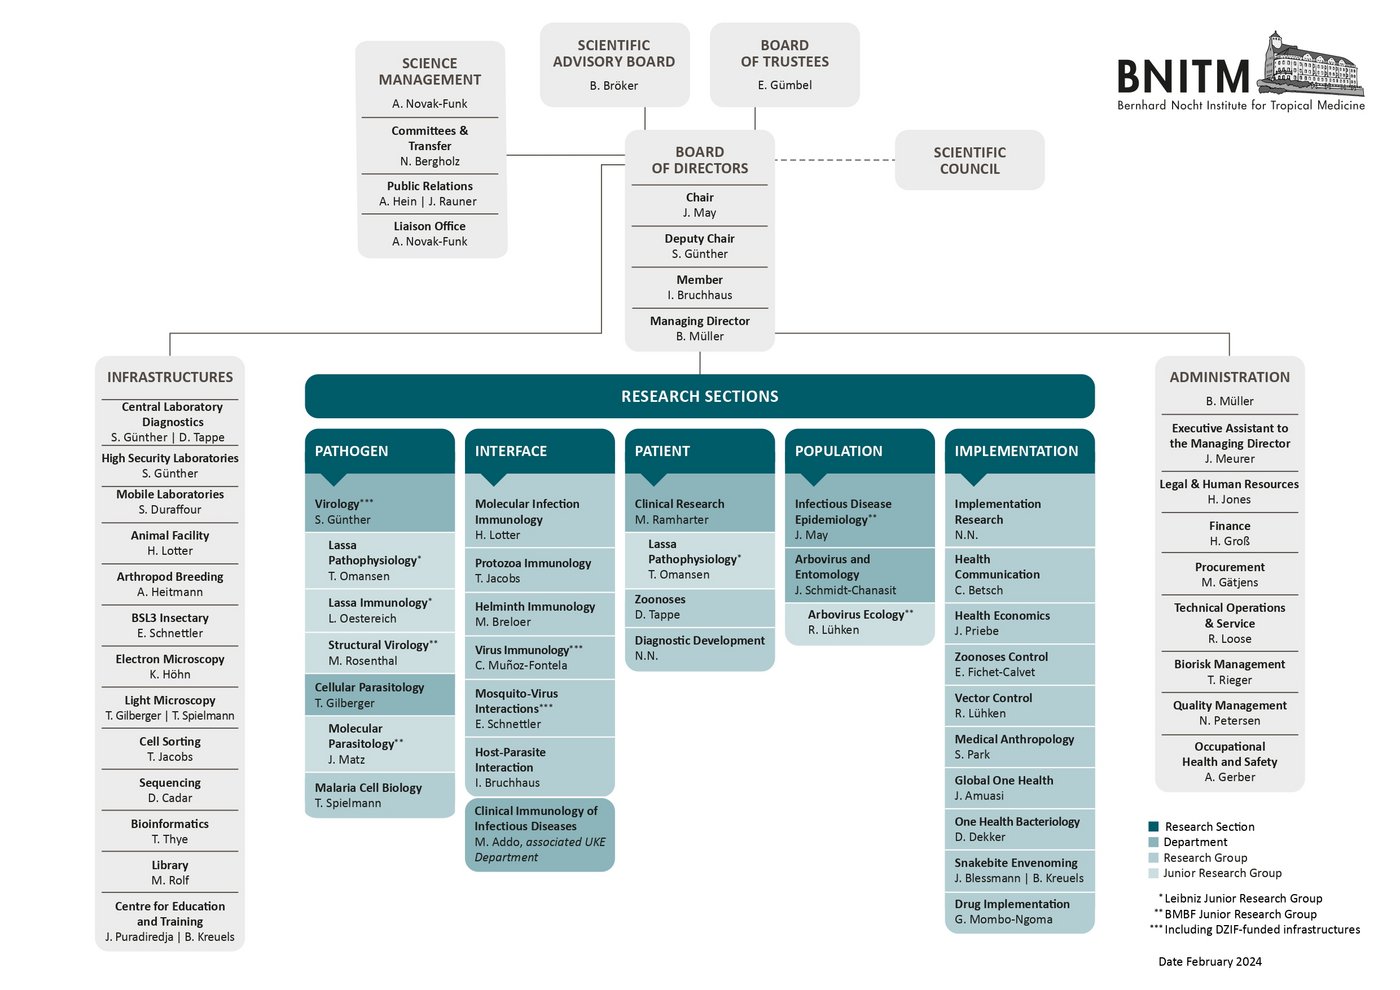 Organization Chart of BNITM